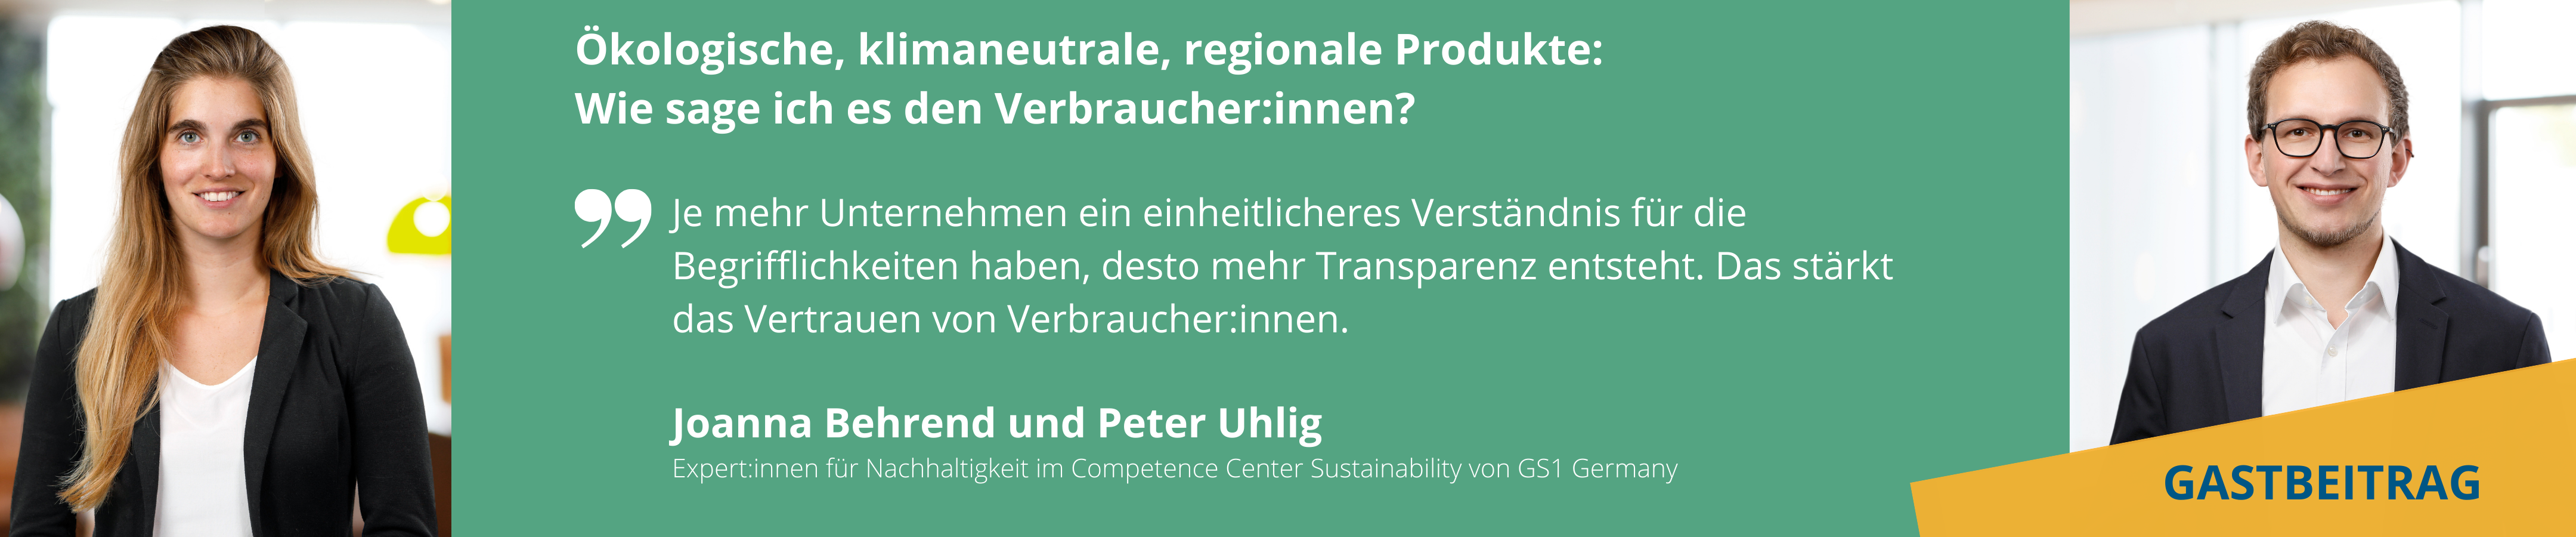 Klimaschutzoffensive-HDE Gastbeitrag Nachhaltige Produkte Produktkommunikation GS1 Germany